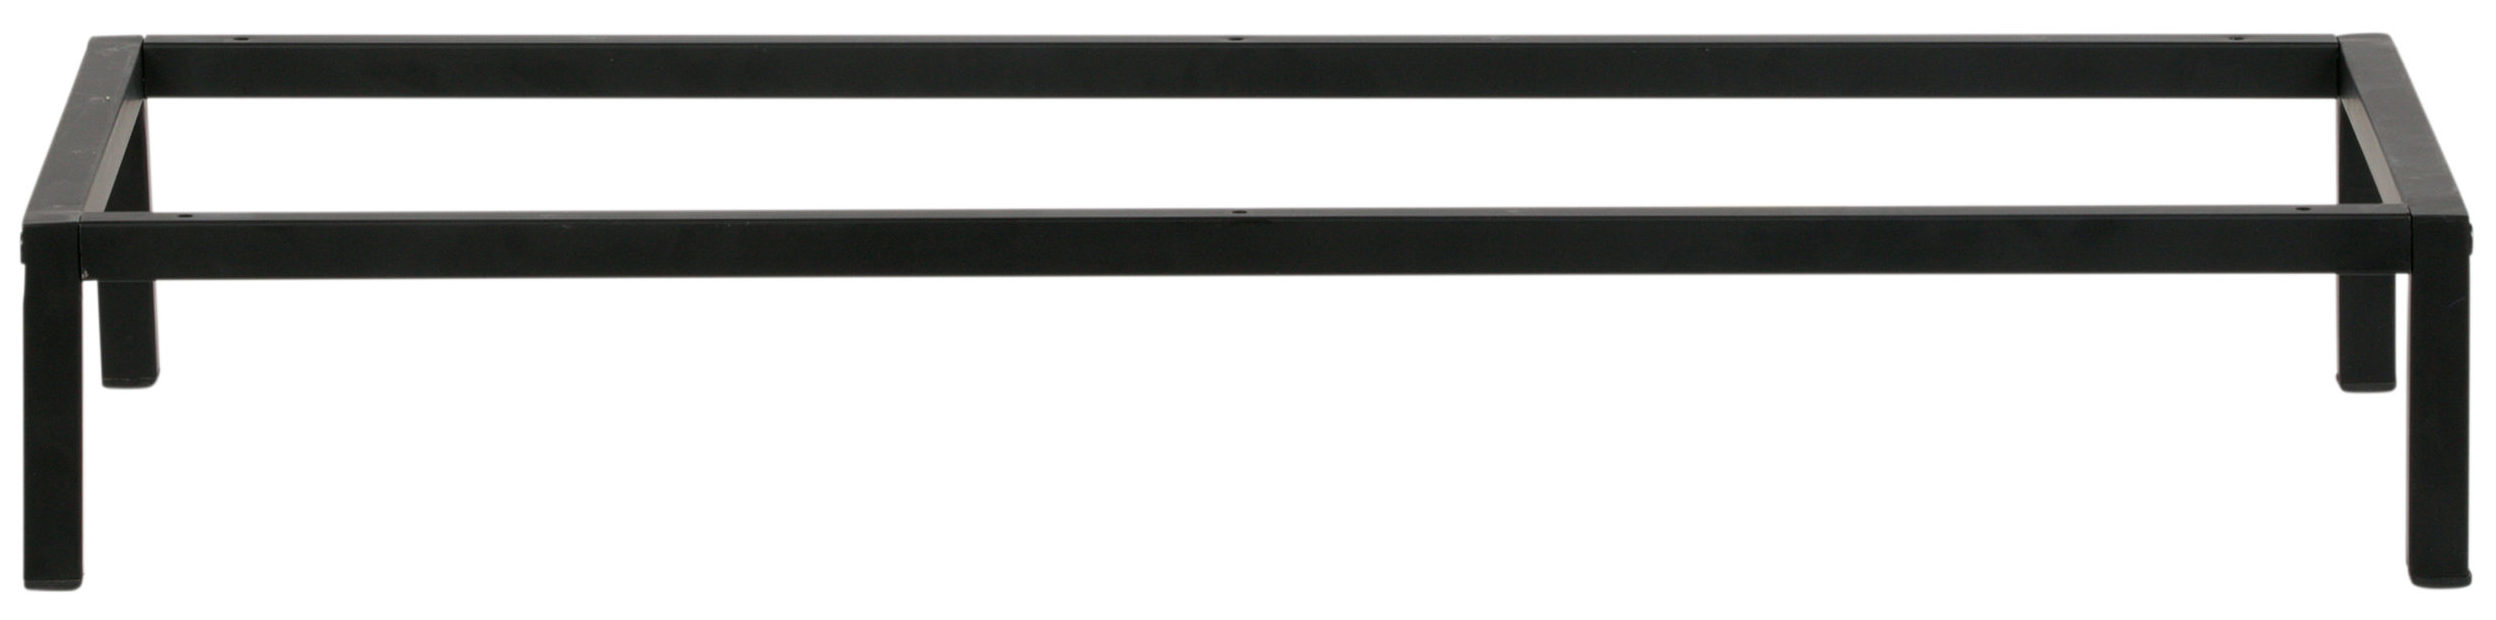 vtwonen Lower Case - Legs Metaal - Zwart - 12x81x35